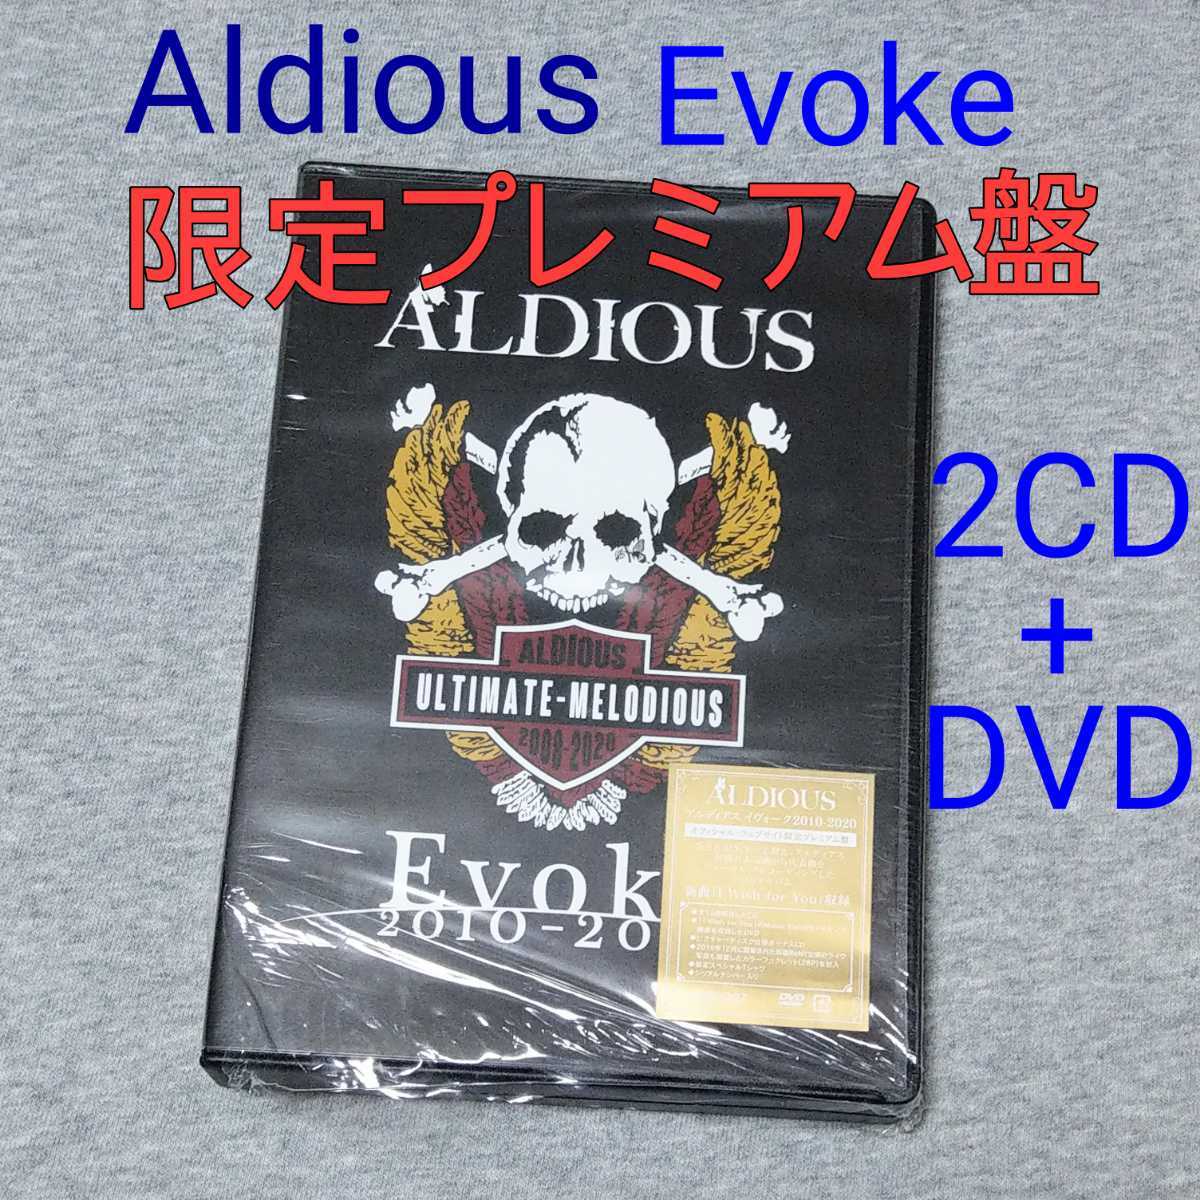 Aldious Evoke 2010-2020 オフィシャル・ウェブサイト限定プレミアム盤 ...